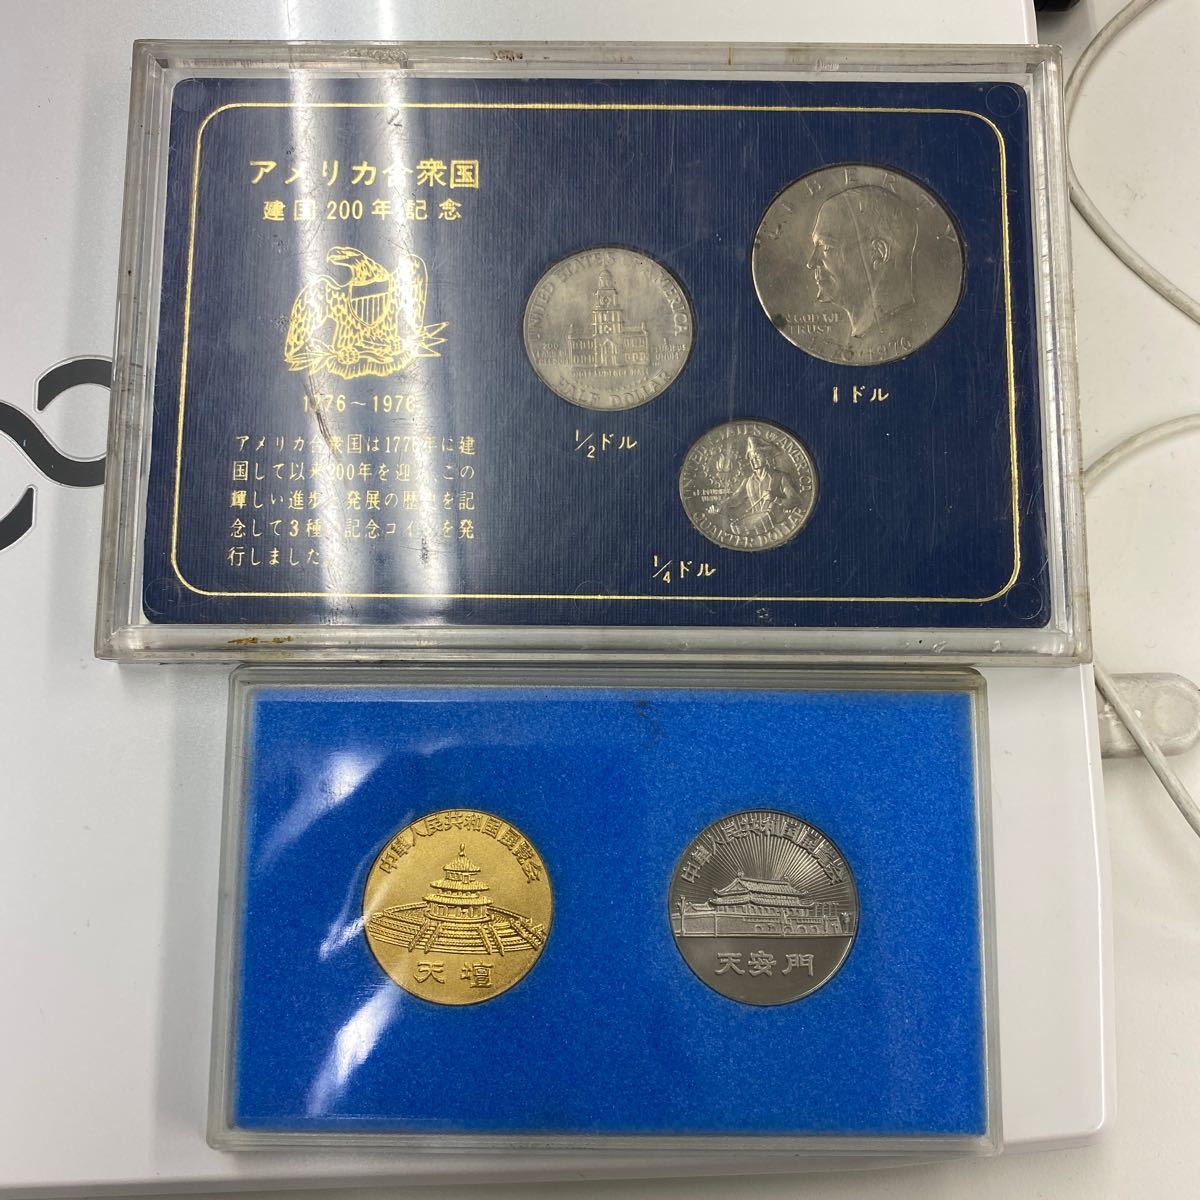 アメリカ合衆国 建国200年 記念コイン 6nkuxjeVNL - paramaestros.com